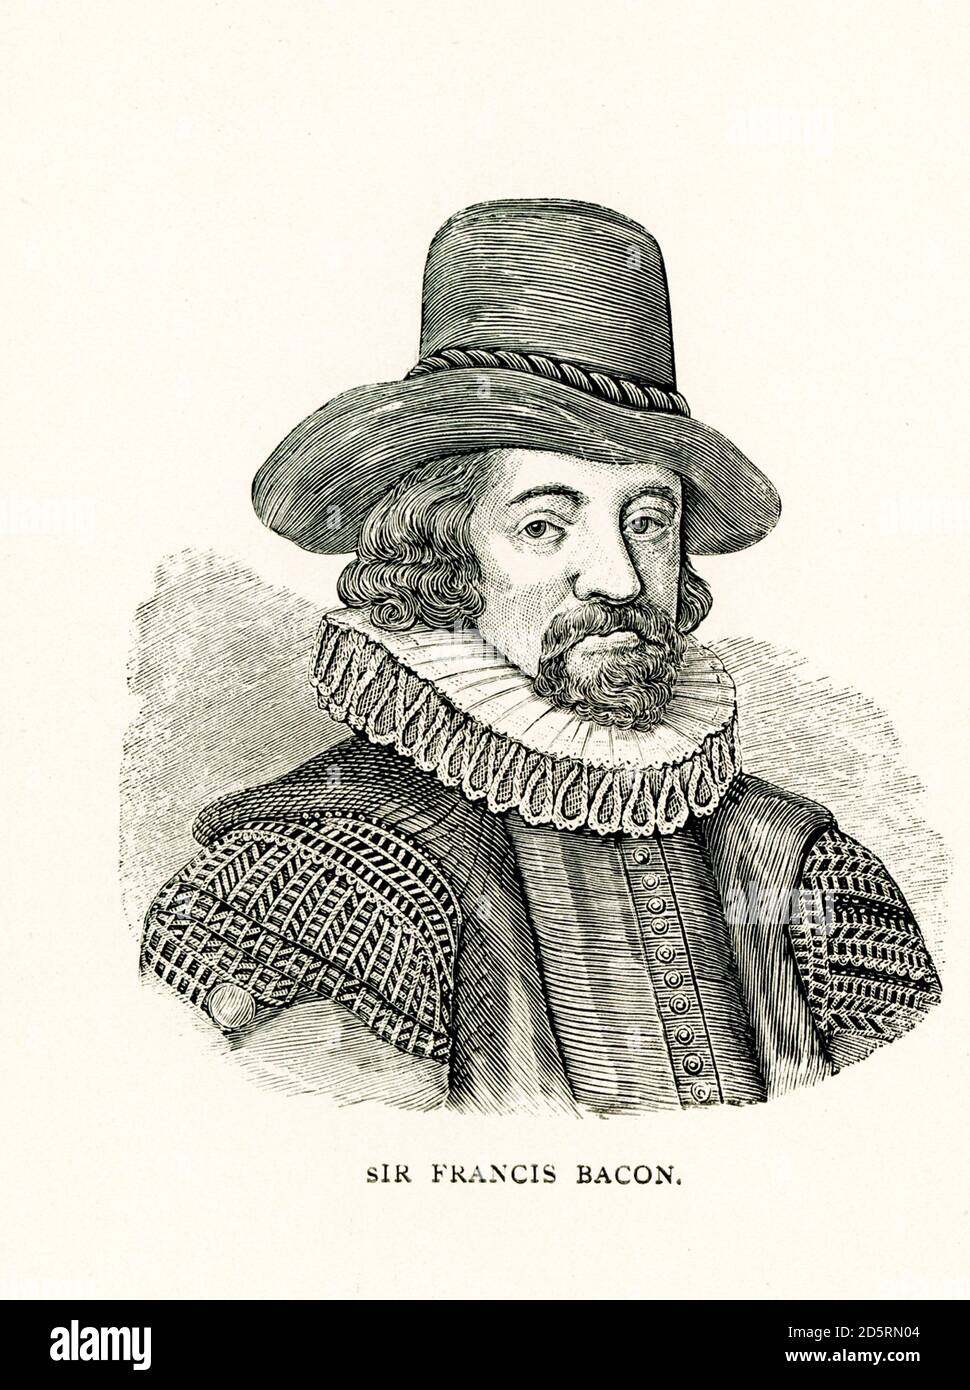 Francis Bacon (morto nel 1626), 1° Visconte St Alban, conosciuto anche come Lord Verulam, è stato un filosofo e statista inglese che ha servito come avvocato generale e come Signore Cancelliere d'Inghilterra. I suoi lavori sono accreditati per lo sviluppo del metodo scientifico e sono rimasti influenti attraverso la rivoluzione scientifica. Foto Stock